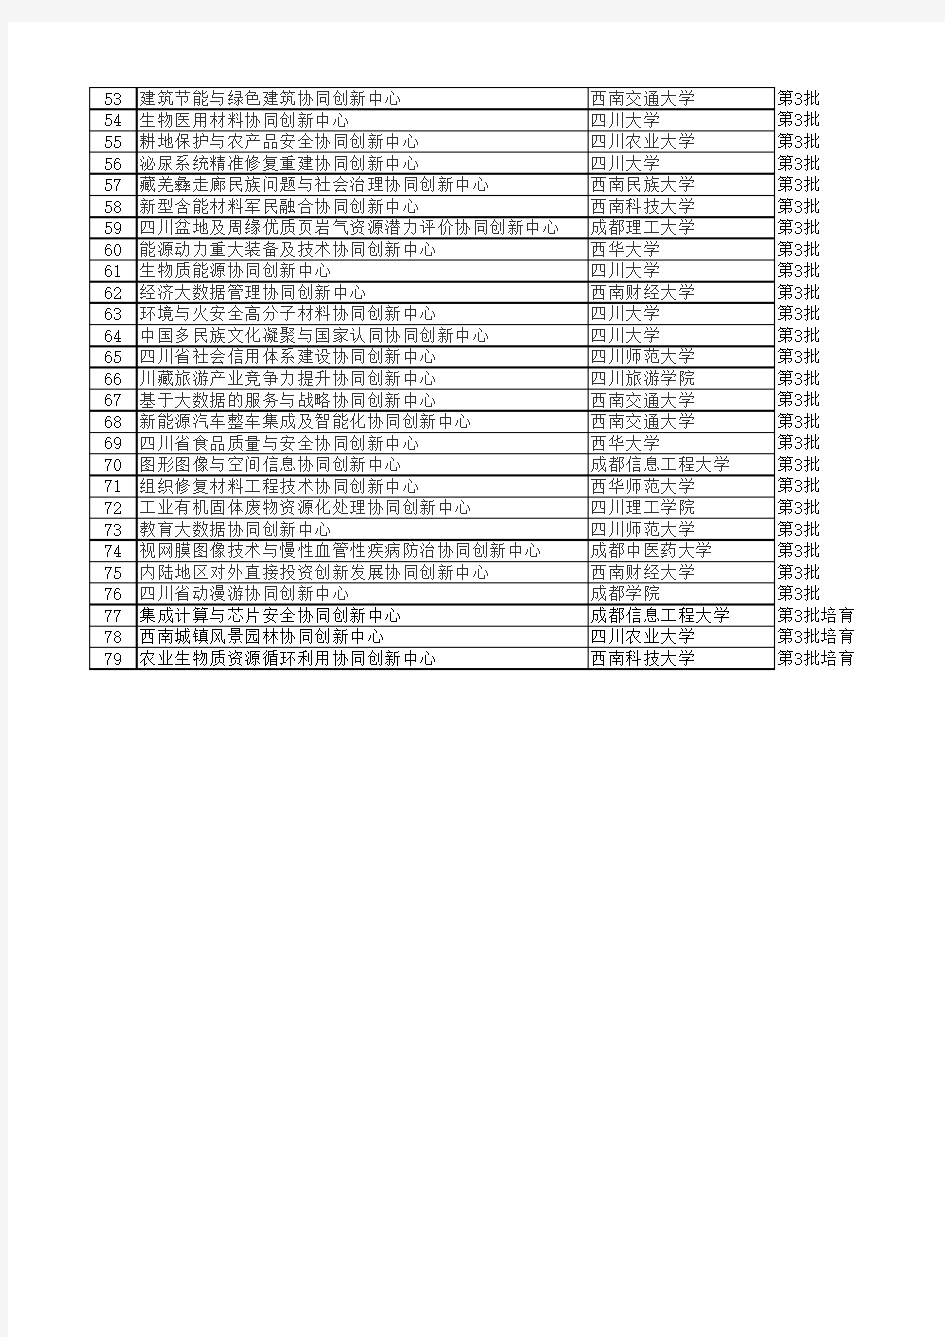 四川2011协同创新中心名单(三批)